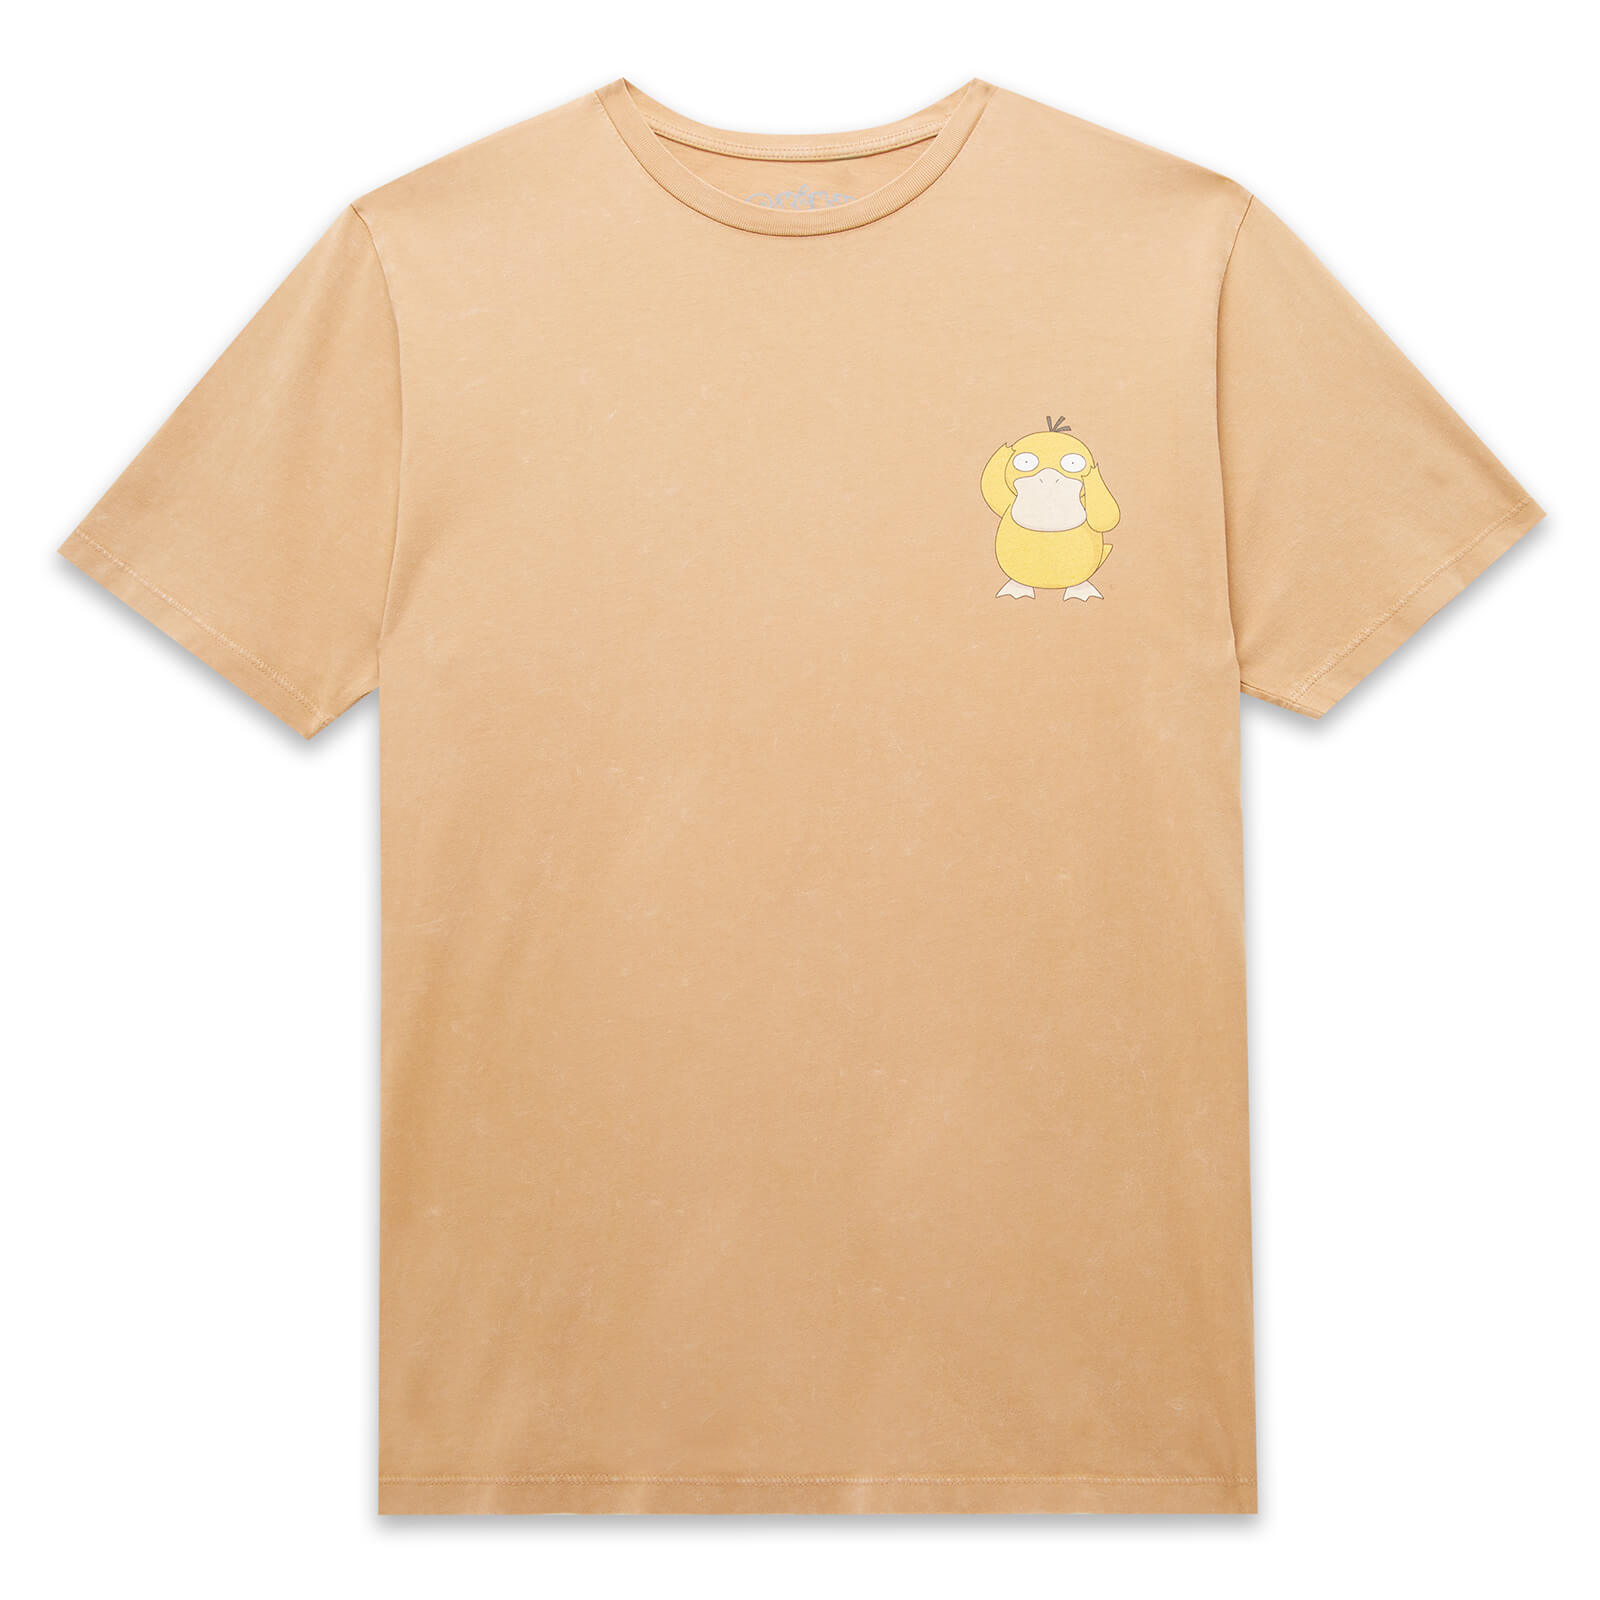 Pokemon Psyduck Unisex T-Shirt - Tan Acid Wash - XS - Tan Acid Wash